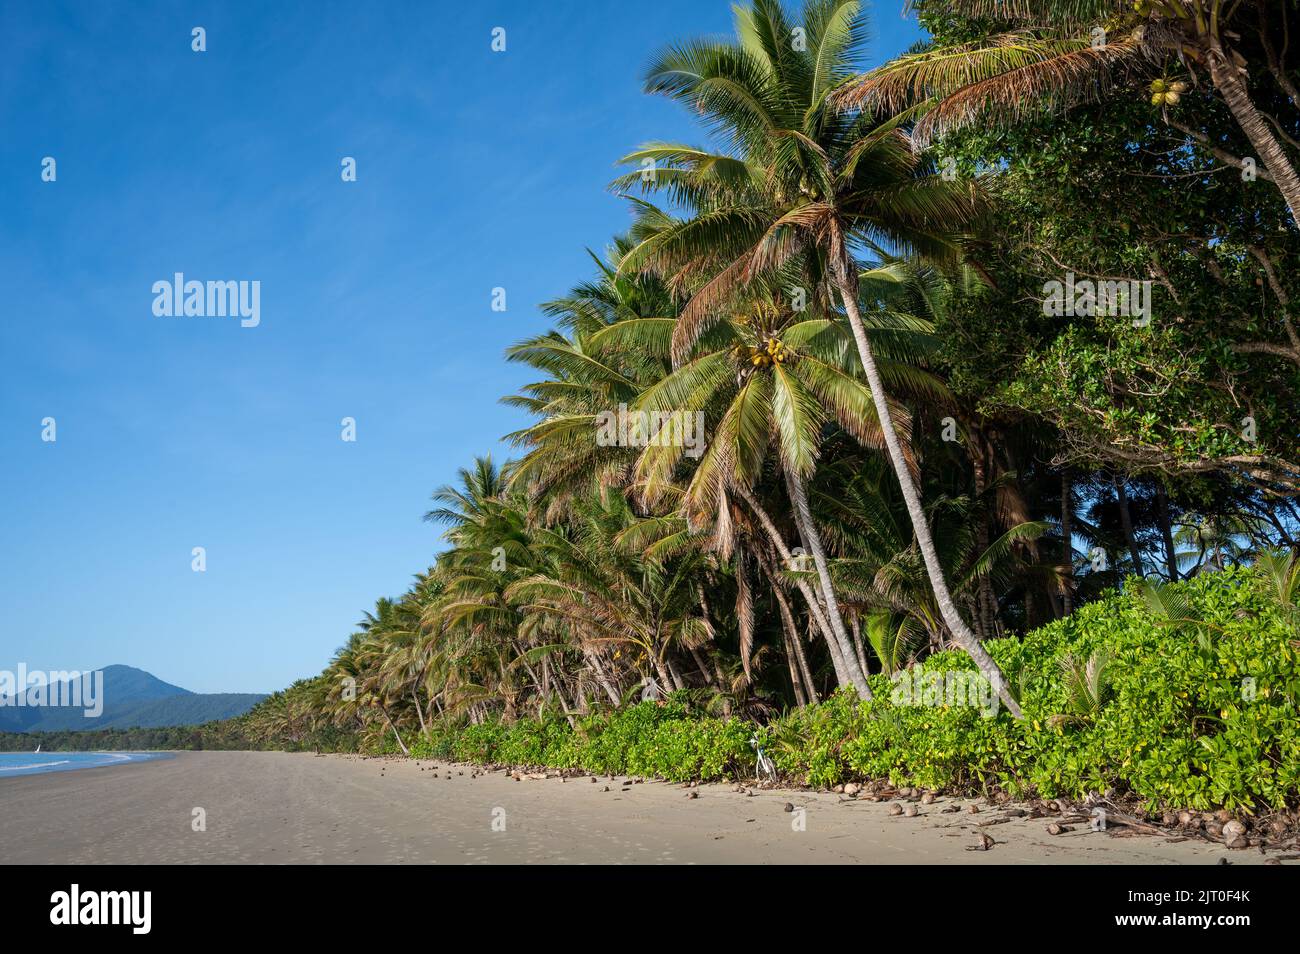 Das 4 Meilen lange, von Kokos gesäumte Strandresort an einem wunderschönen Tag am blauen Himmel in Port Douglas, angrenzend an das Sheraton Mirage Resort in Queensland, Australien. Stockfoto